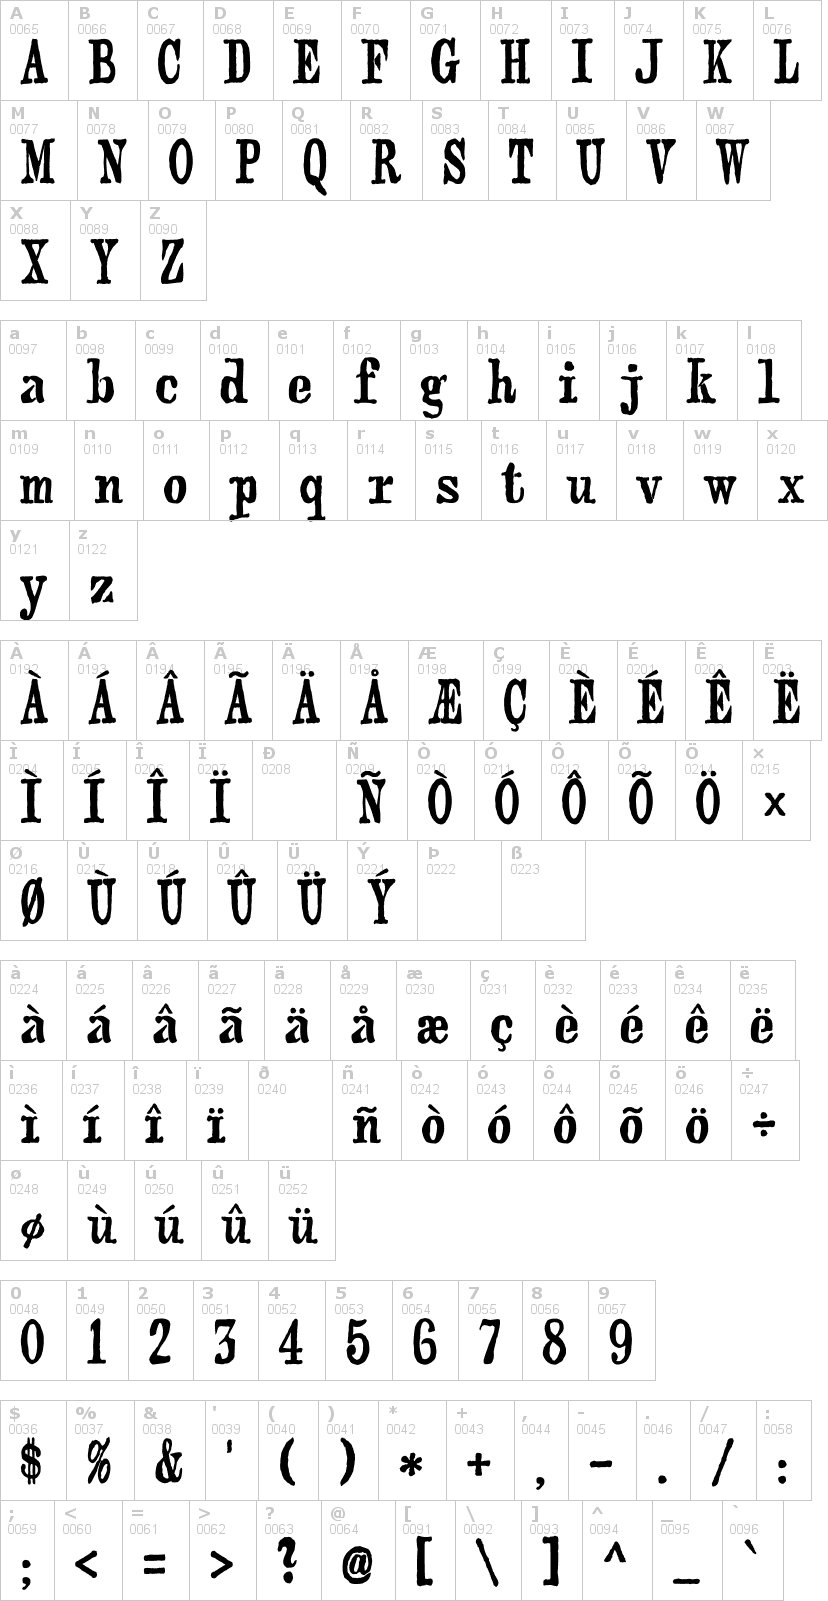 Lettere dell'alfabeto del font webster con le quali è possibile realizzare adesivi prespaziati